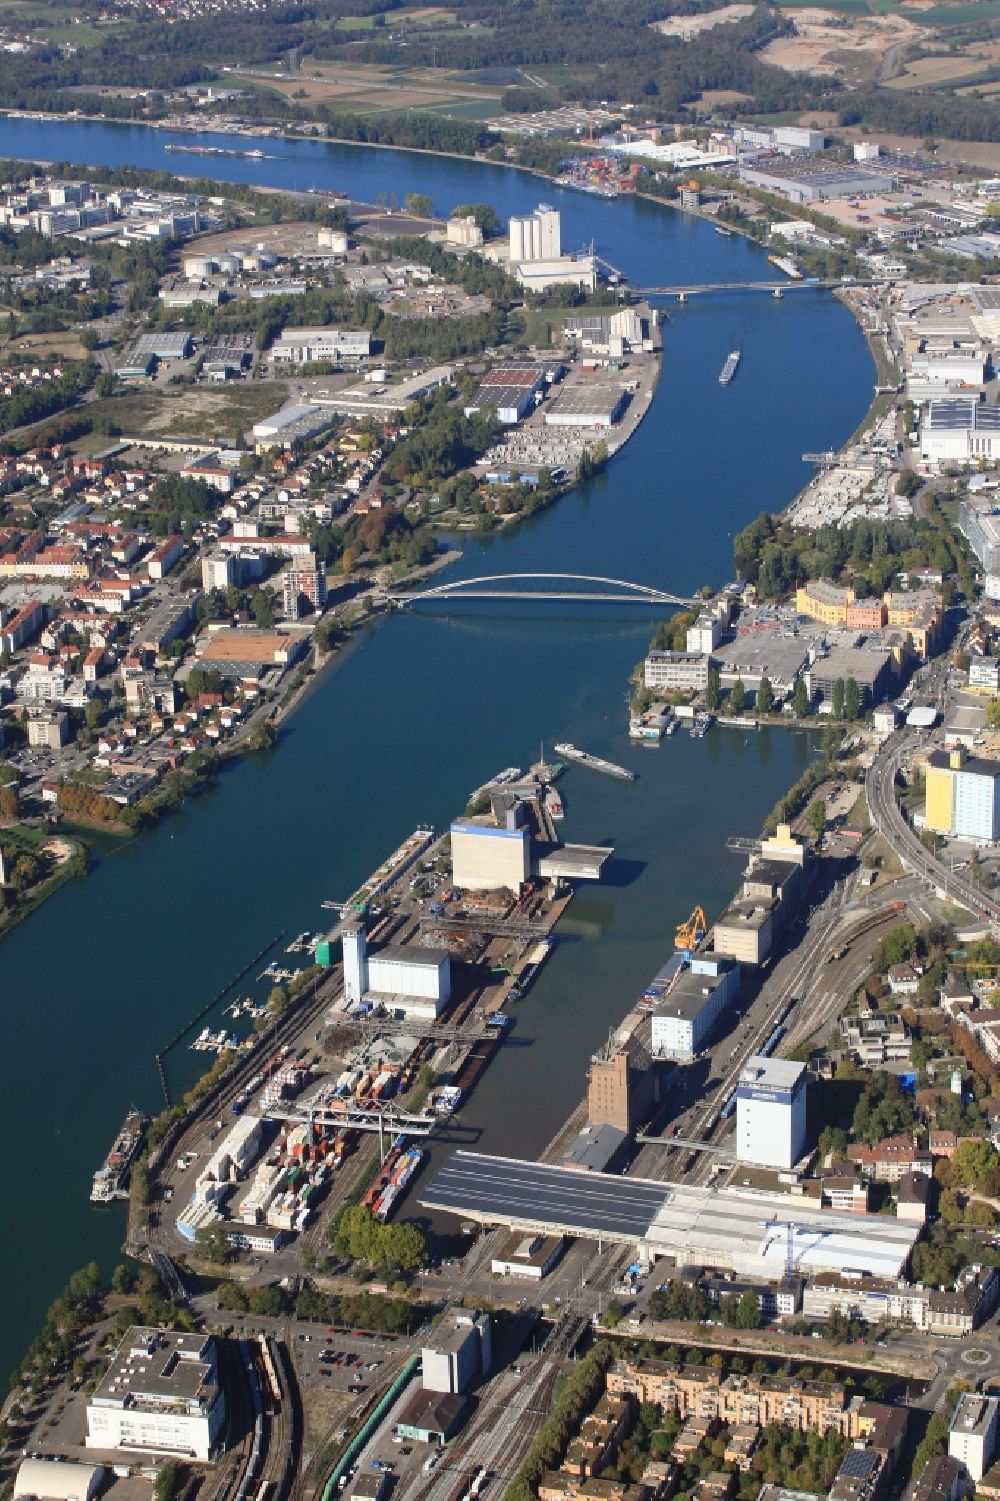 Luftbild Basel - Hafenanlagen im Dreiländereck am Rhein im Ortsteil Kleinhüningen in Basel in Schweiz